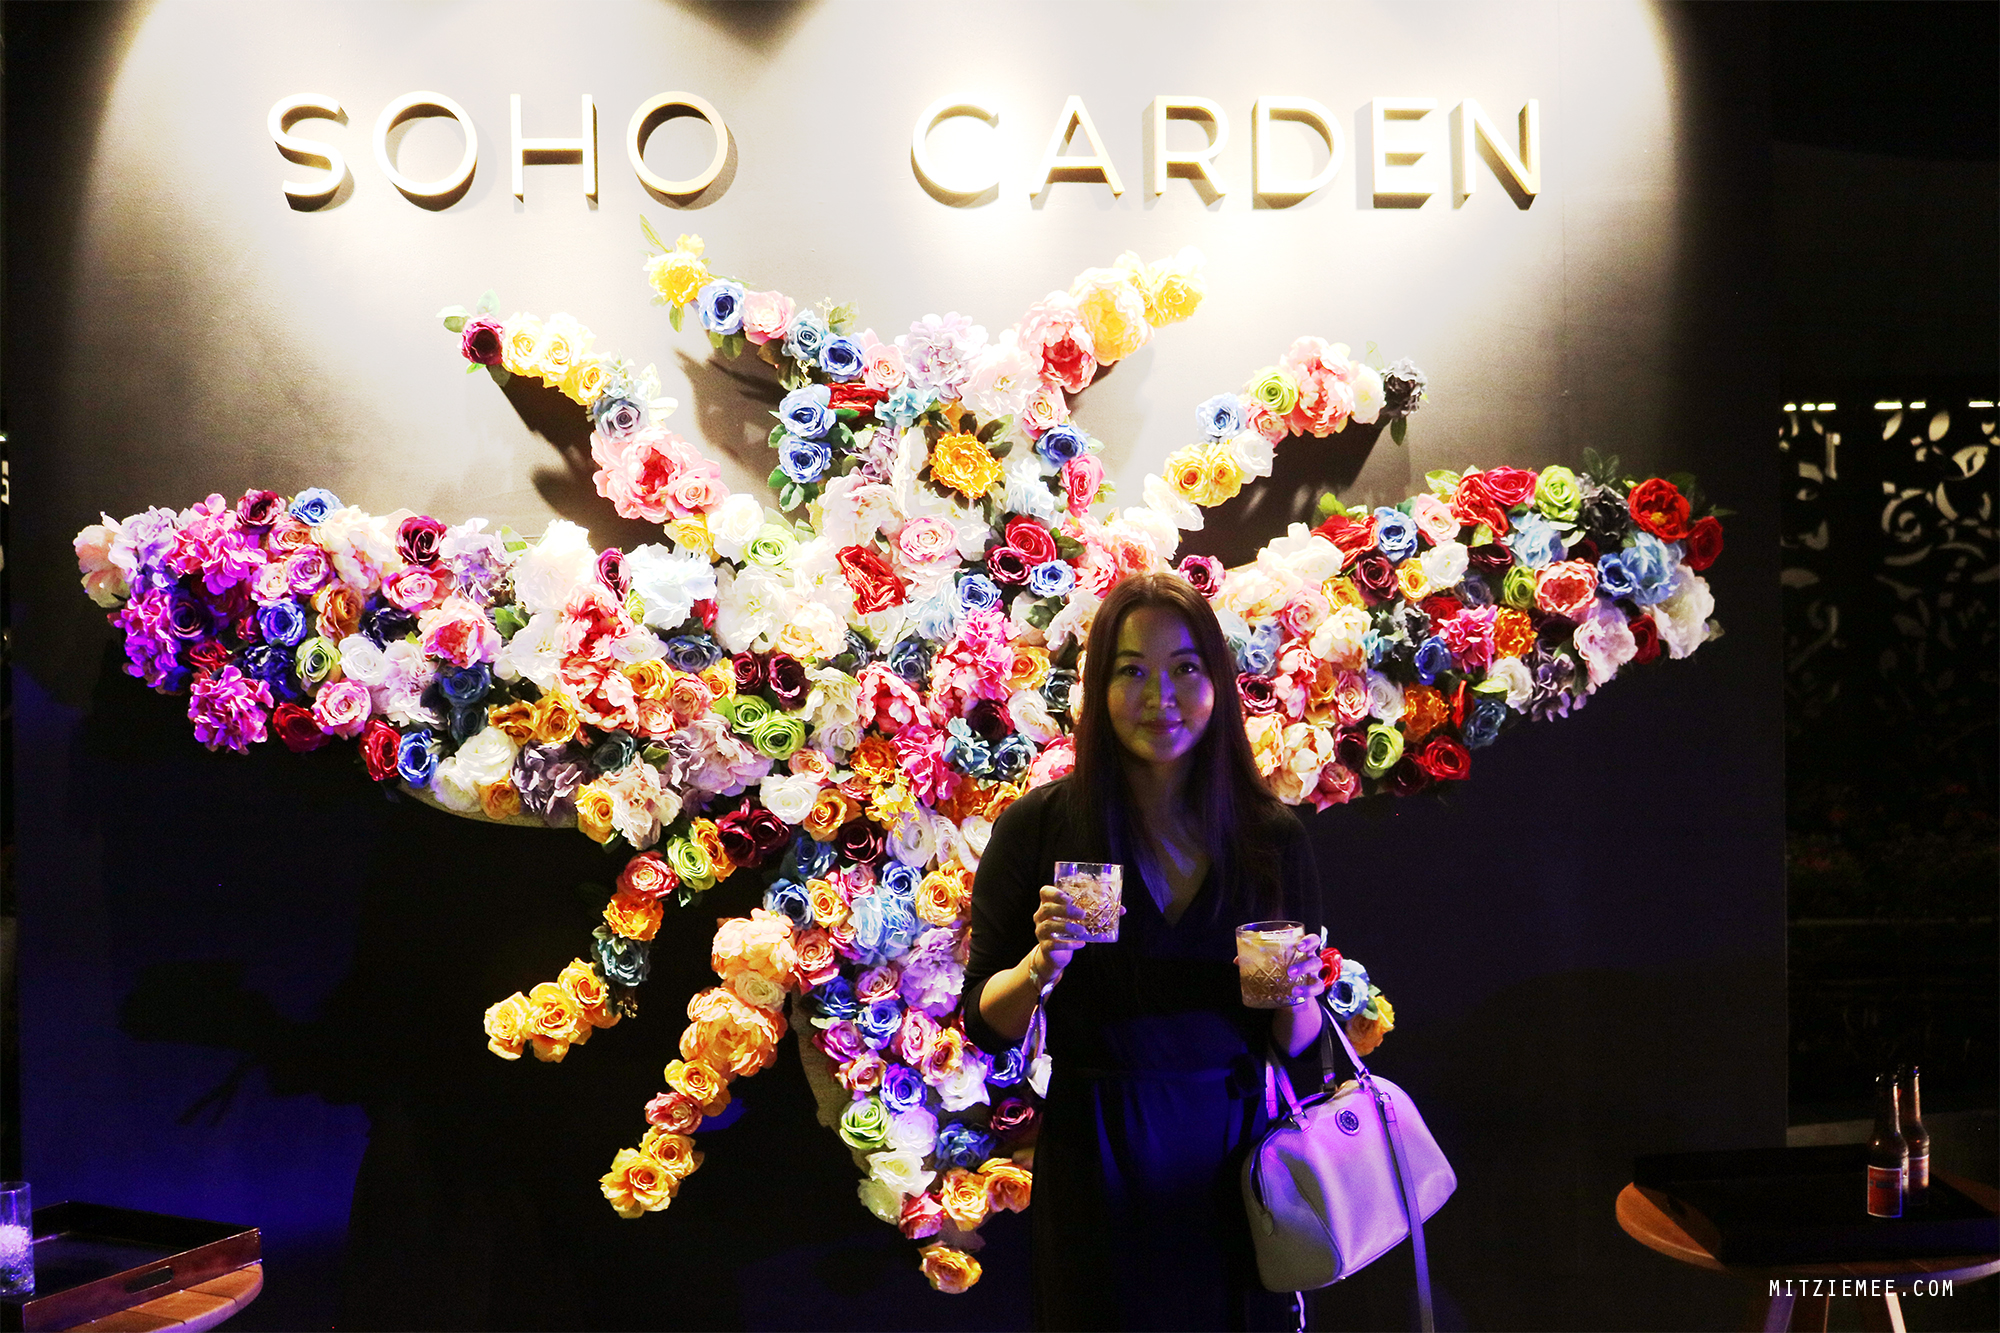 Soho Garden Launch Party, Dubai